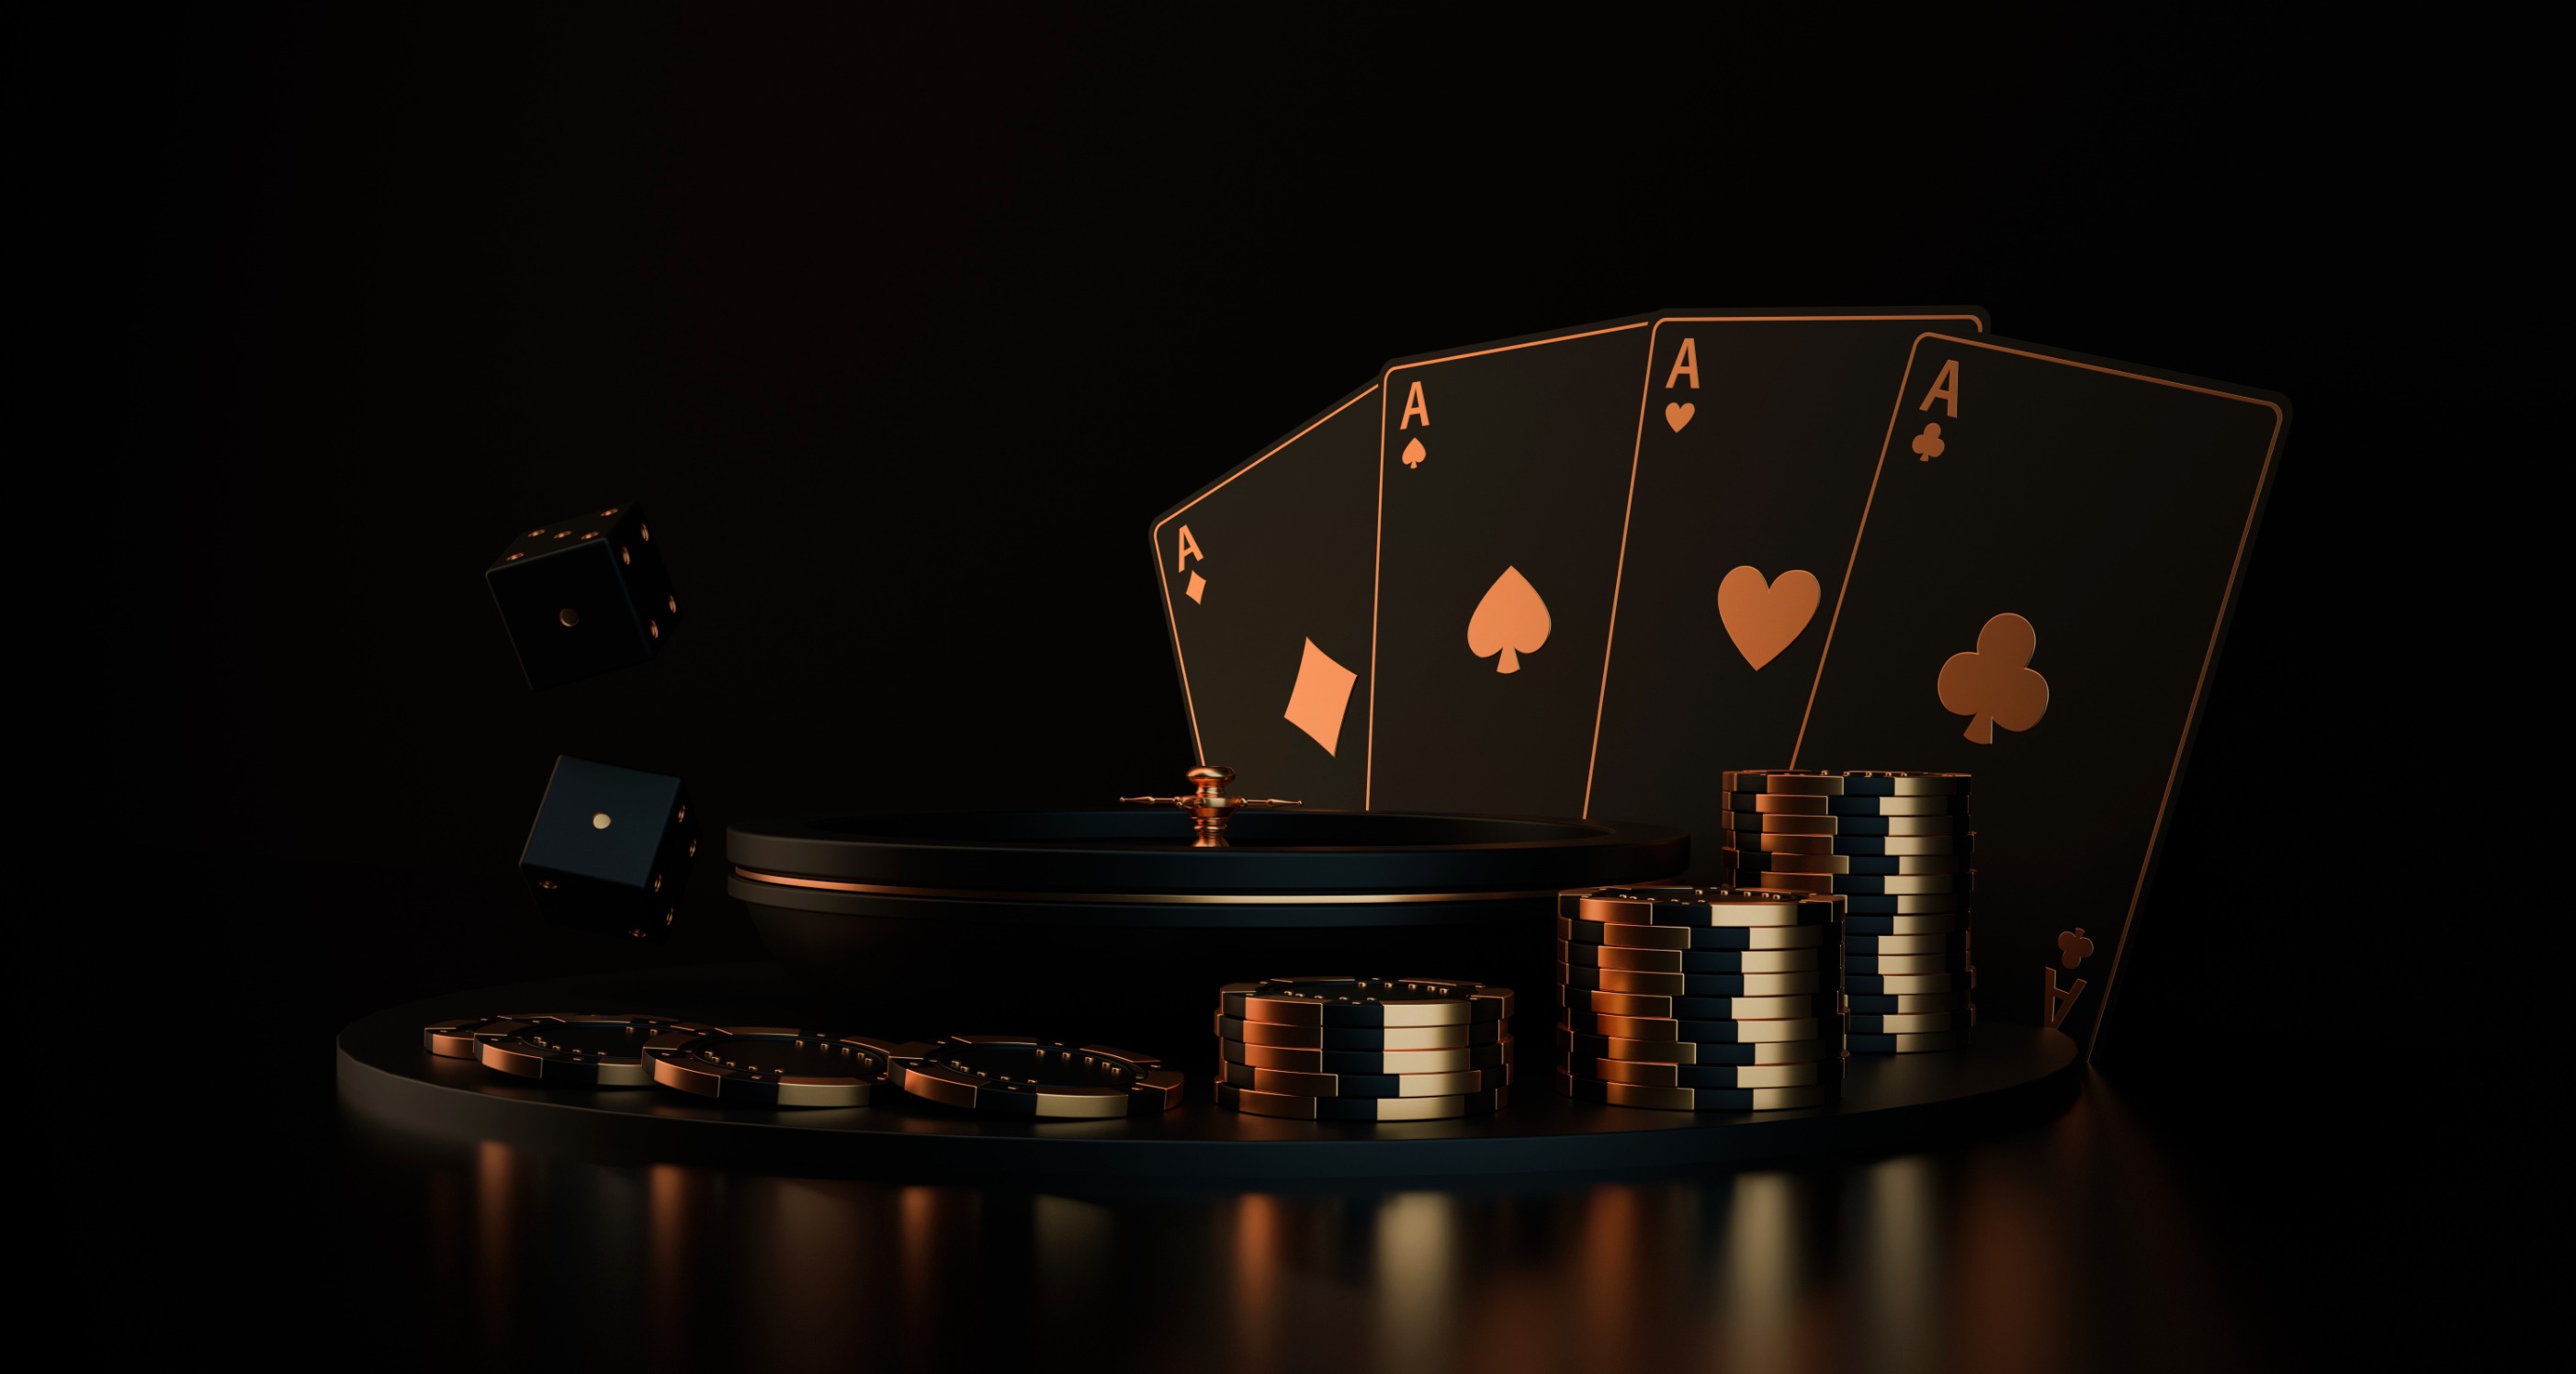 Jouer au casino en ligne : astuces pour profiter de promotions lucratives !